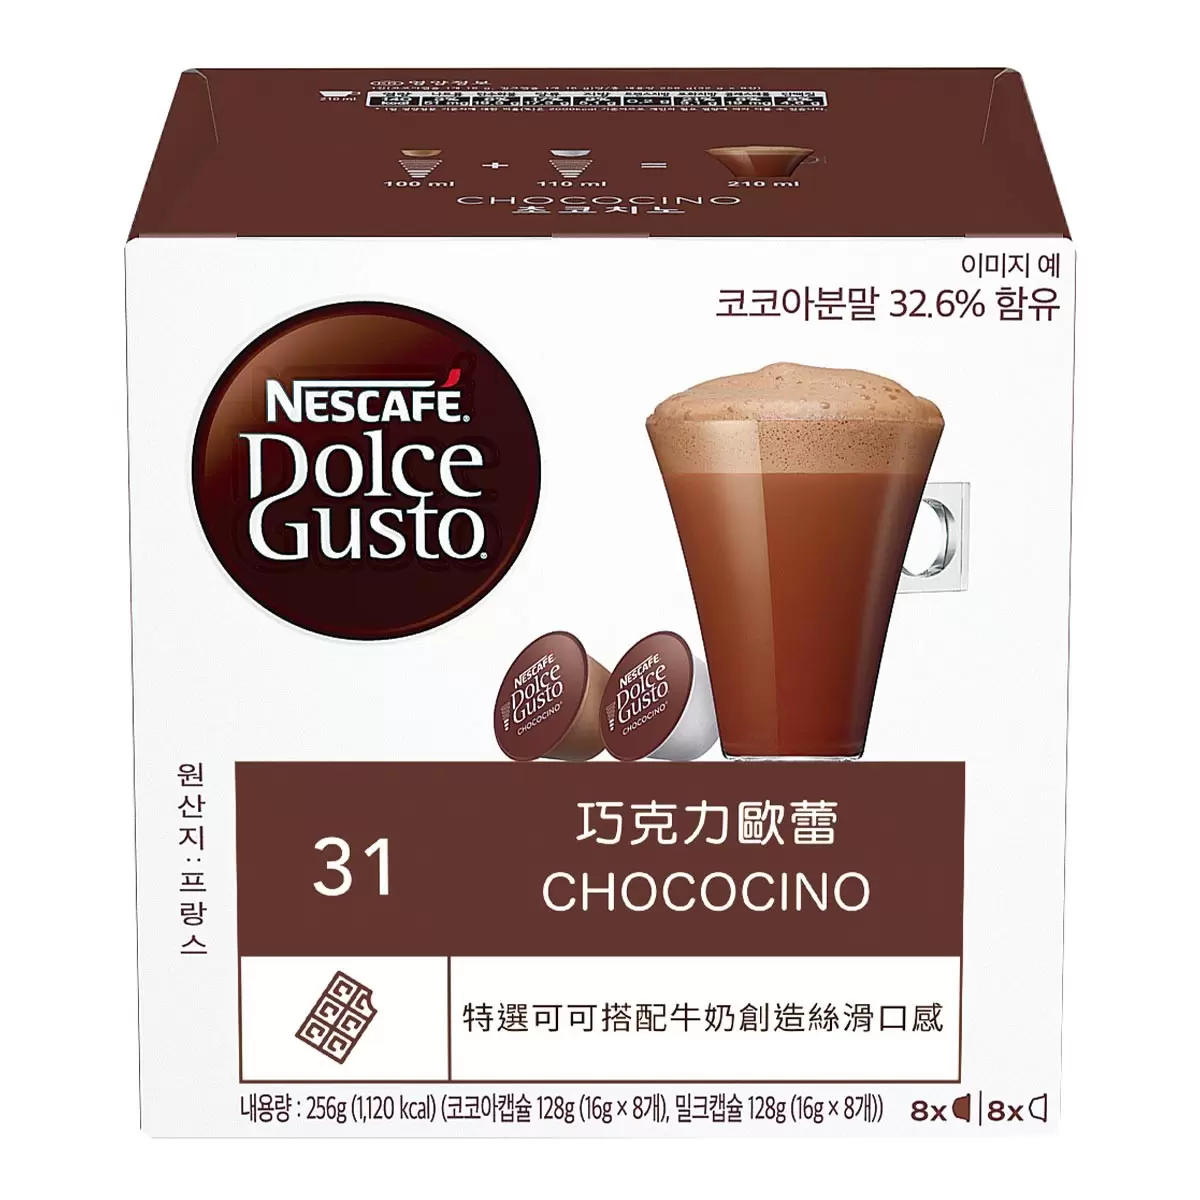 雀巢多趣酷思 焦糖瑪奇朵+巧克力歐蕾膠囊組 96顆 適用NESCAFE Dolce Gusto機器